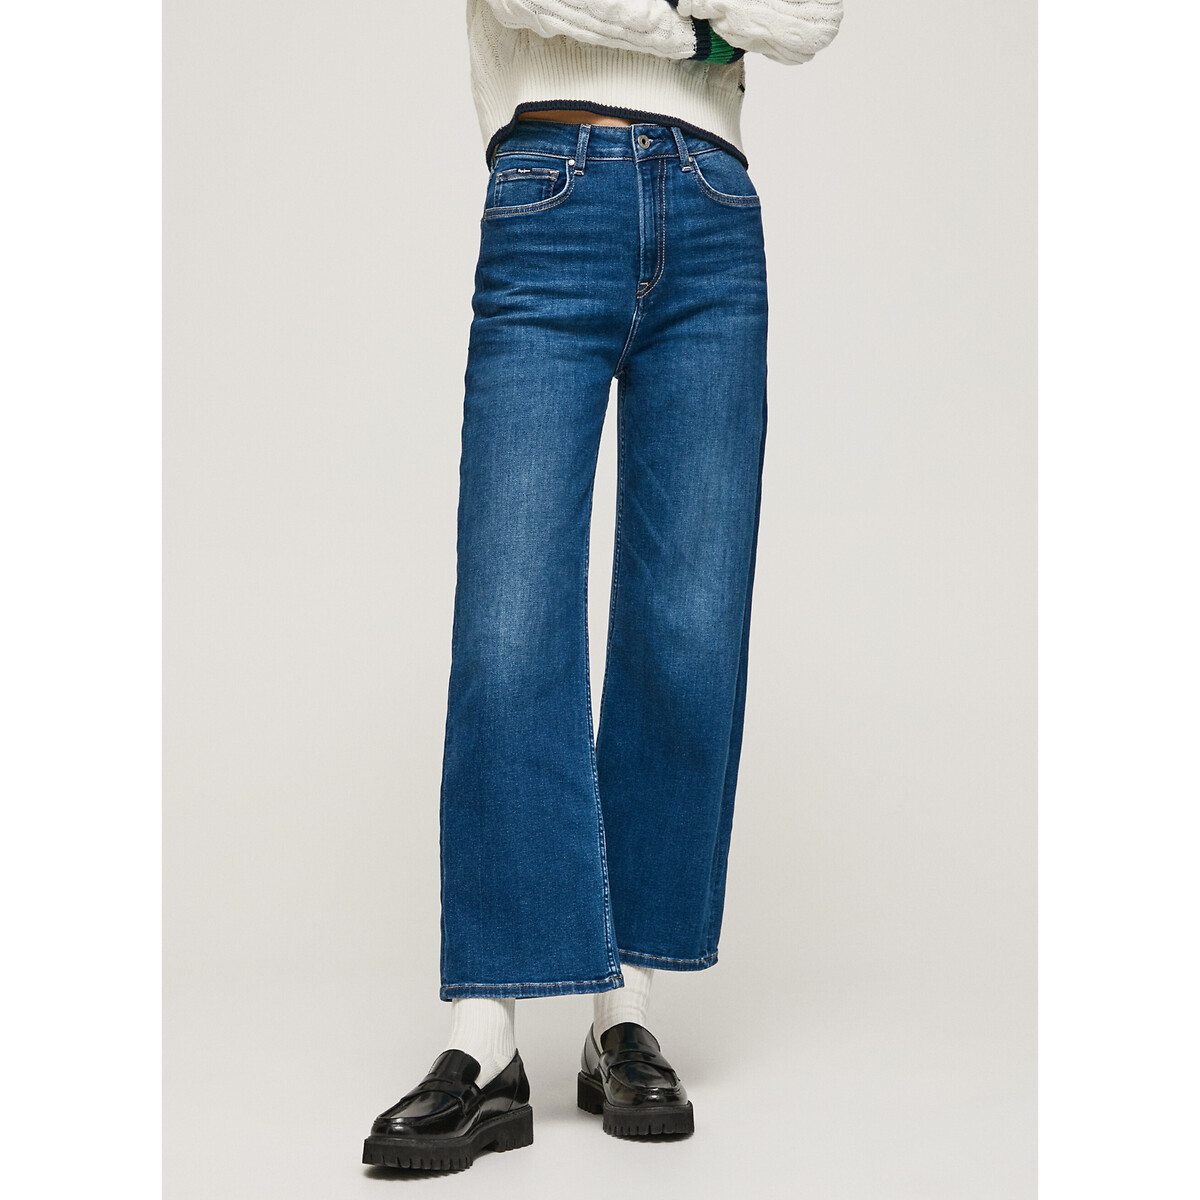 Pepe Jeans Denim Straight Jeans Lexa Sky High in het Blauw Bespaar 20% Dames Kleding voor voor Jeans voor Jeans met wijde pijp 